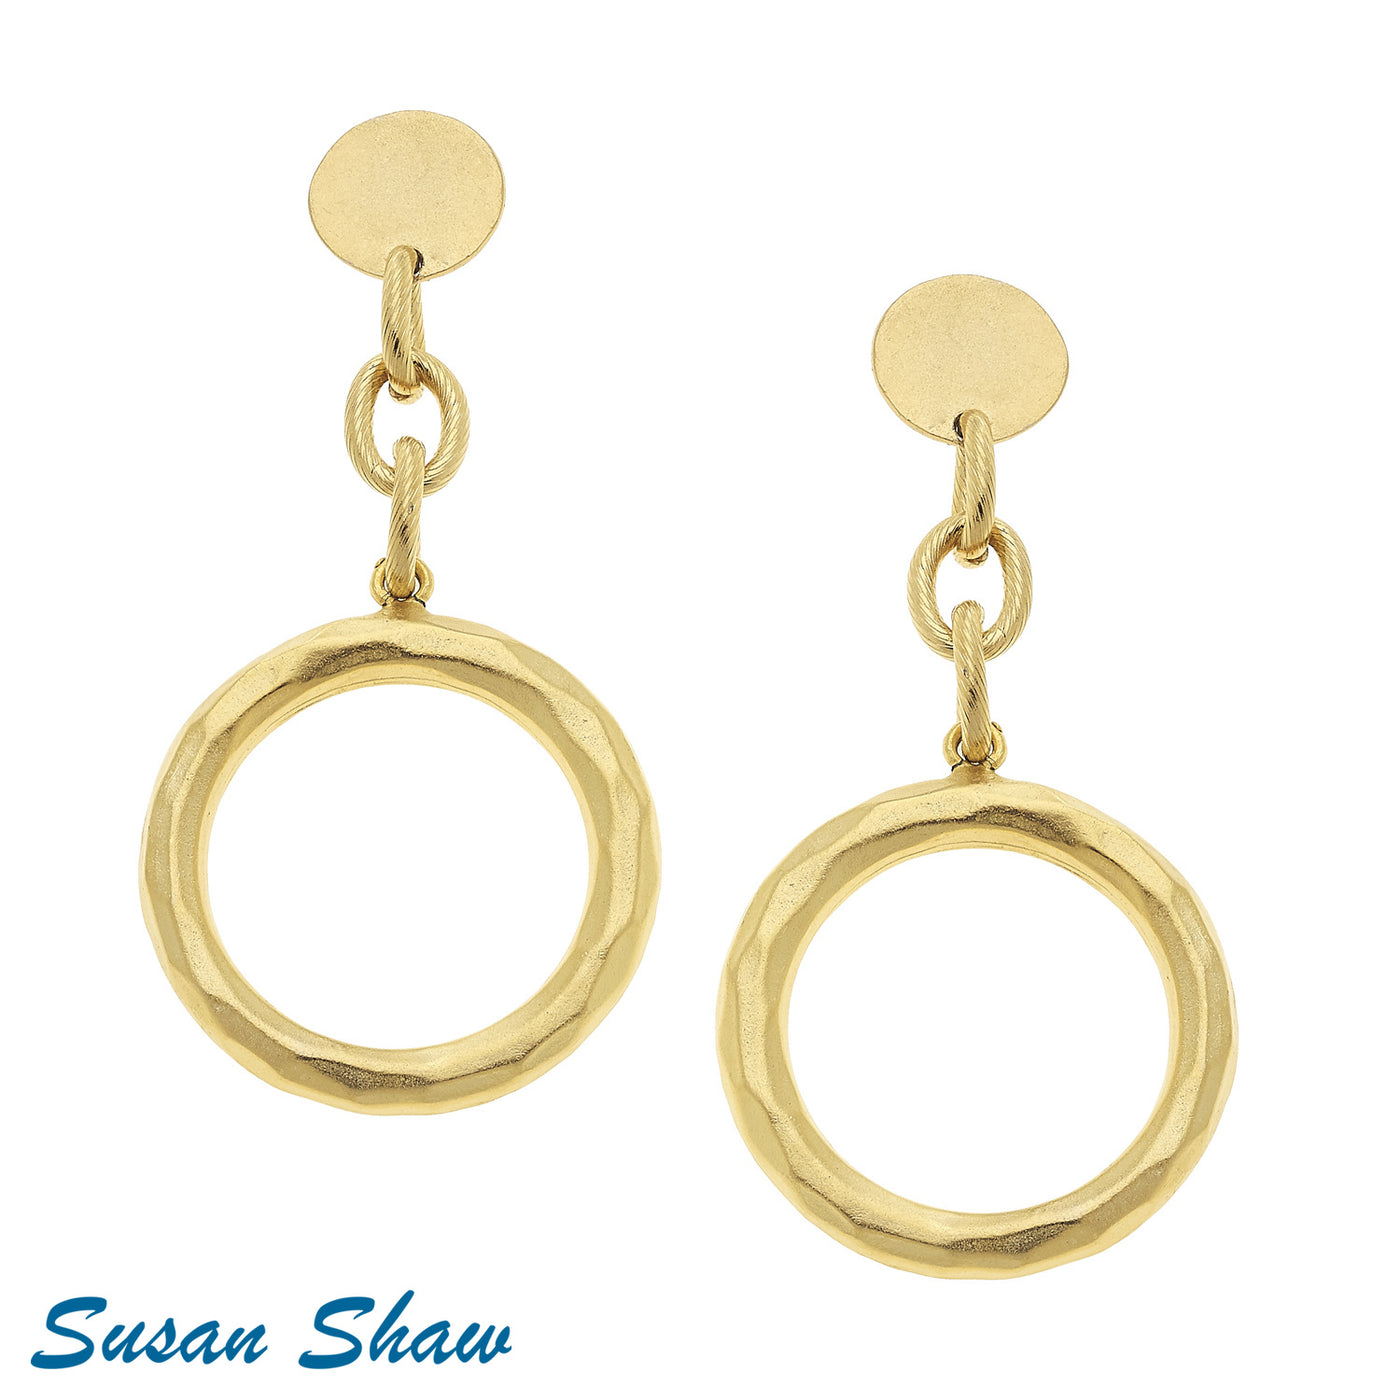 Susan Shaw Sage Circle Earrings